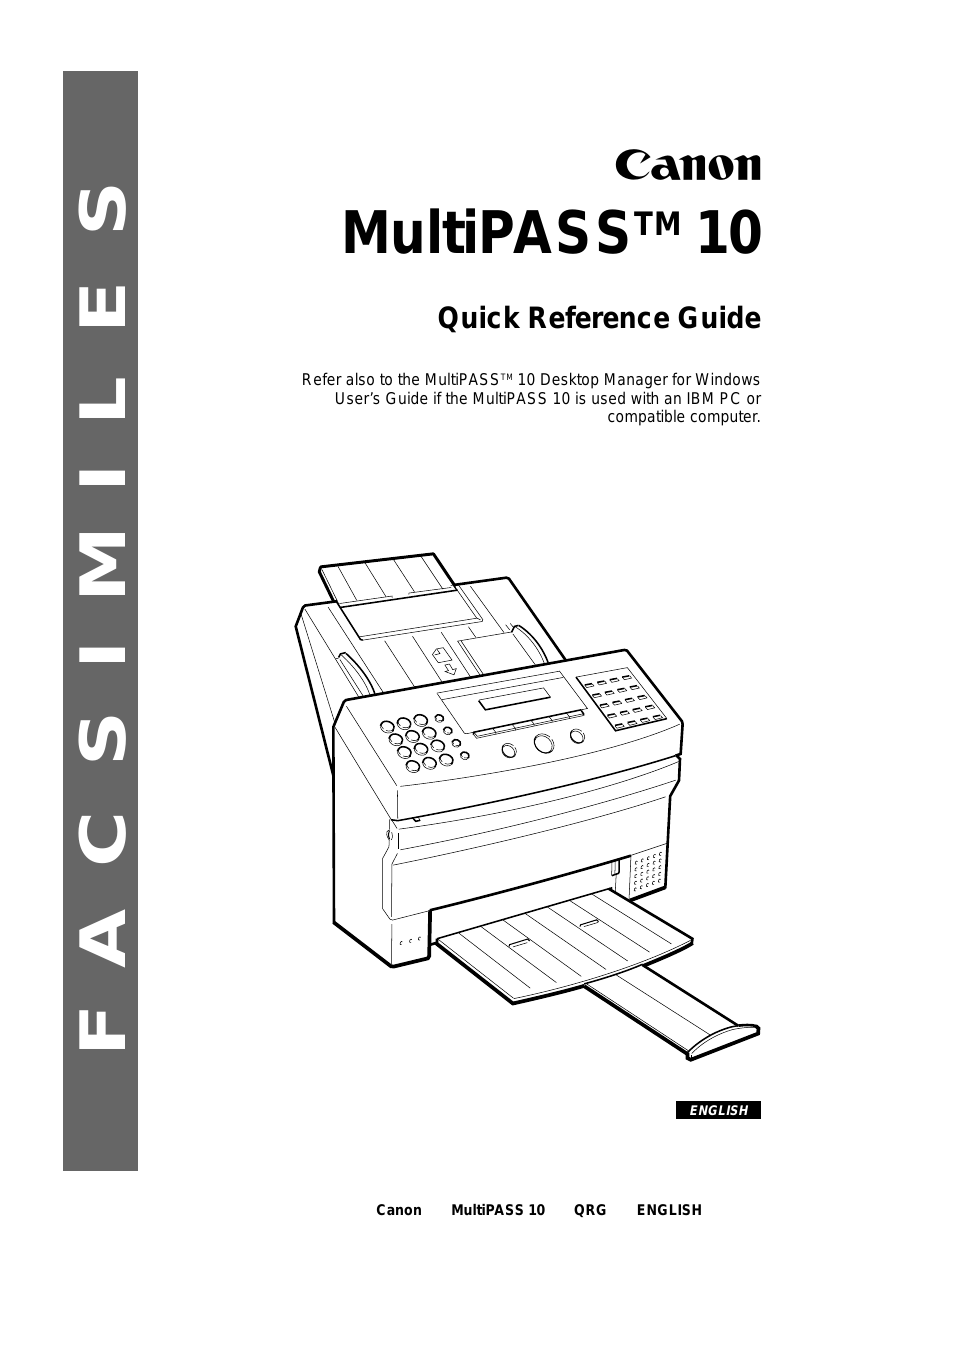 MultiPASS 10